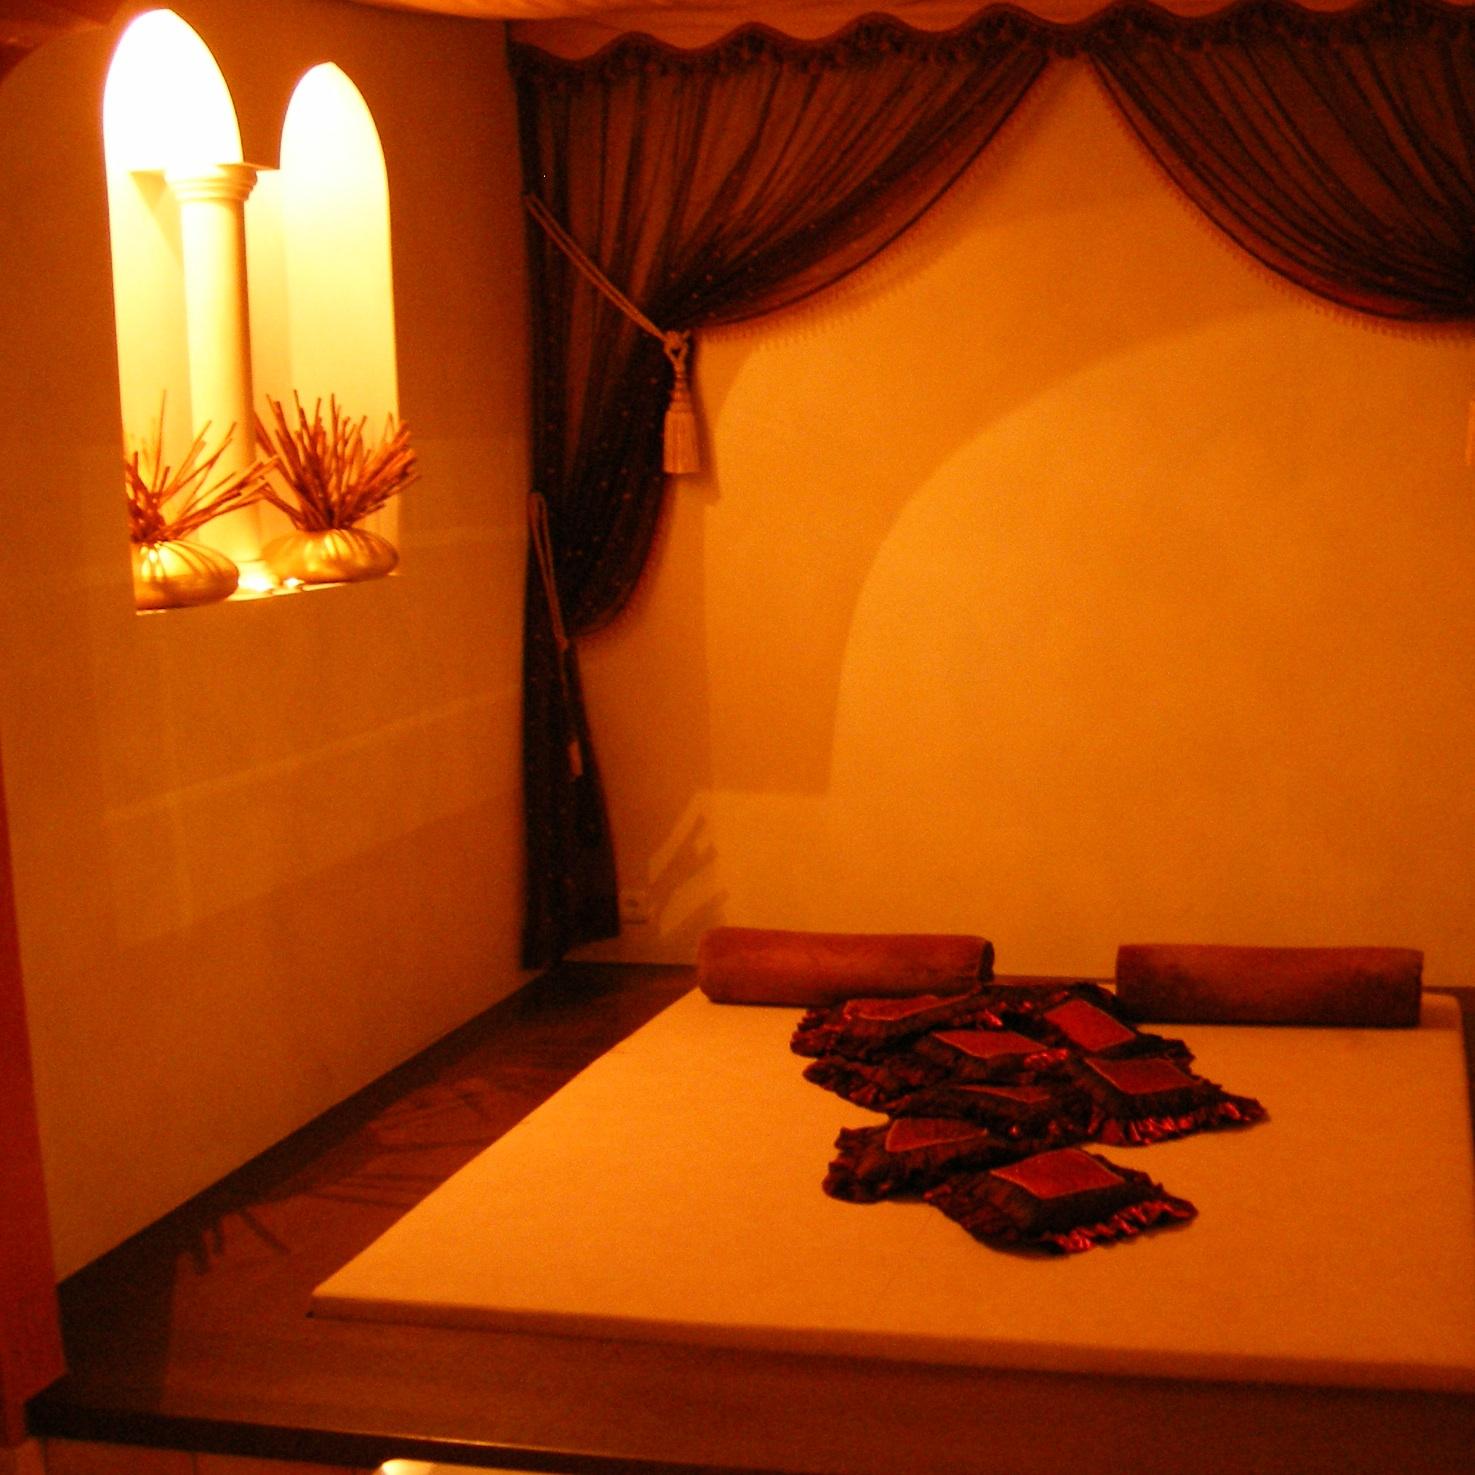 Кровать в арабском стиле